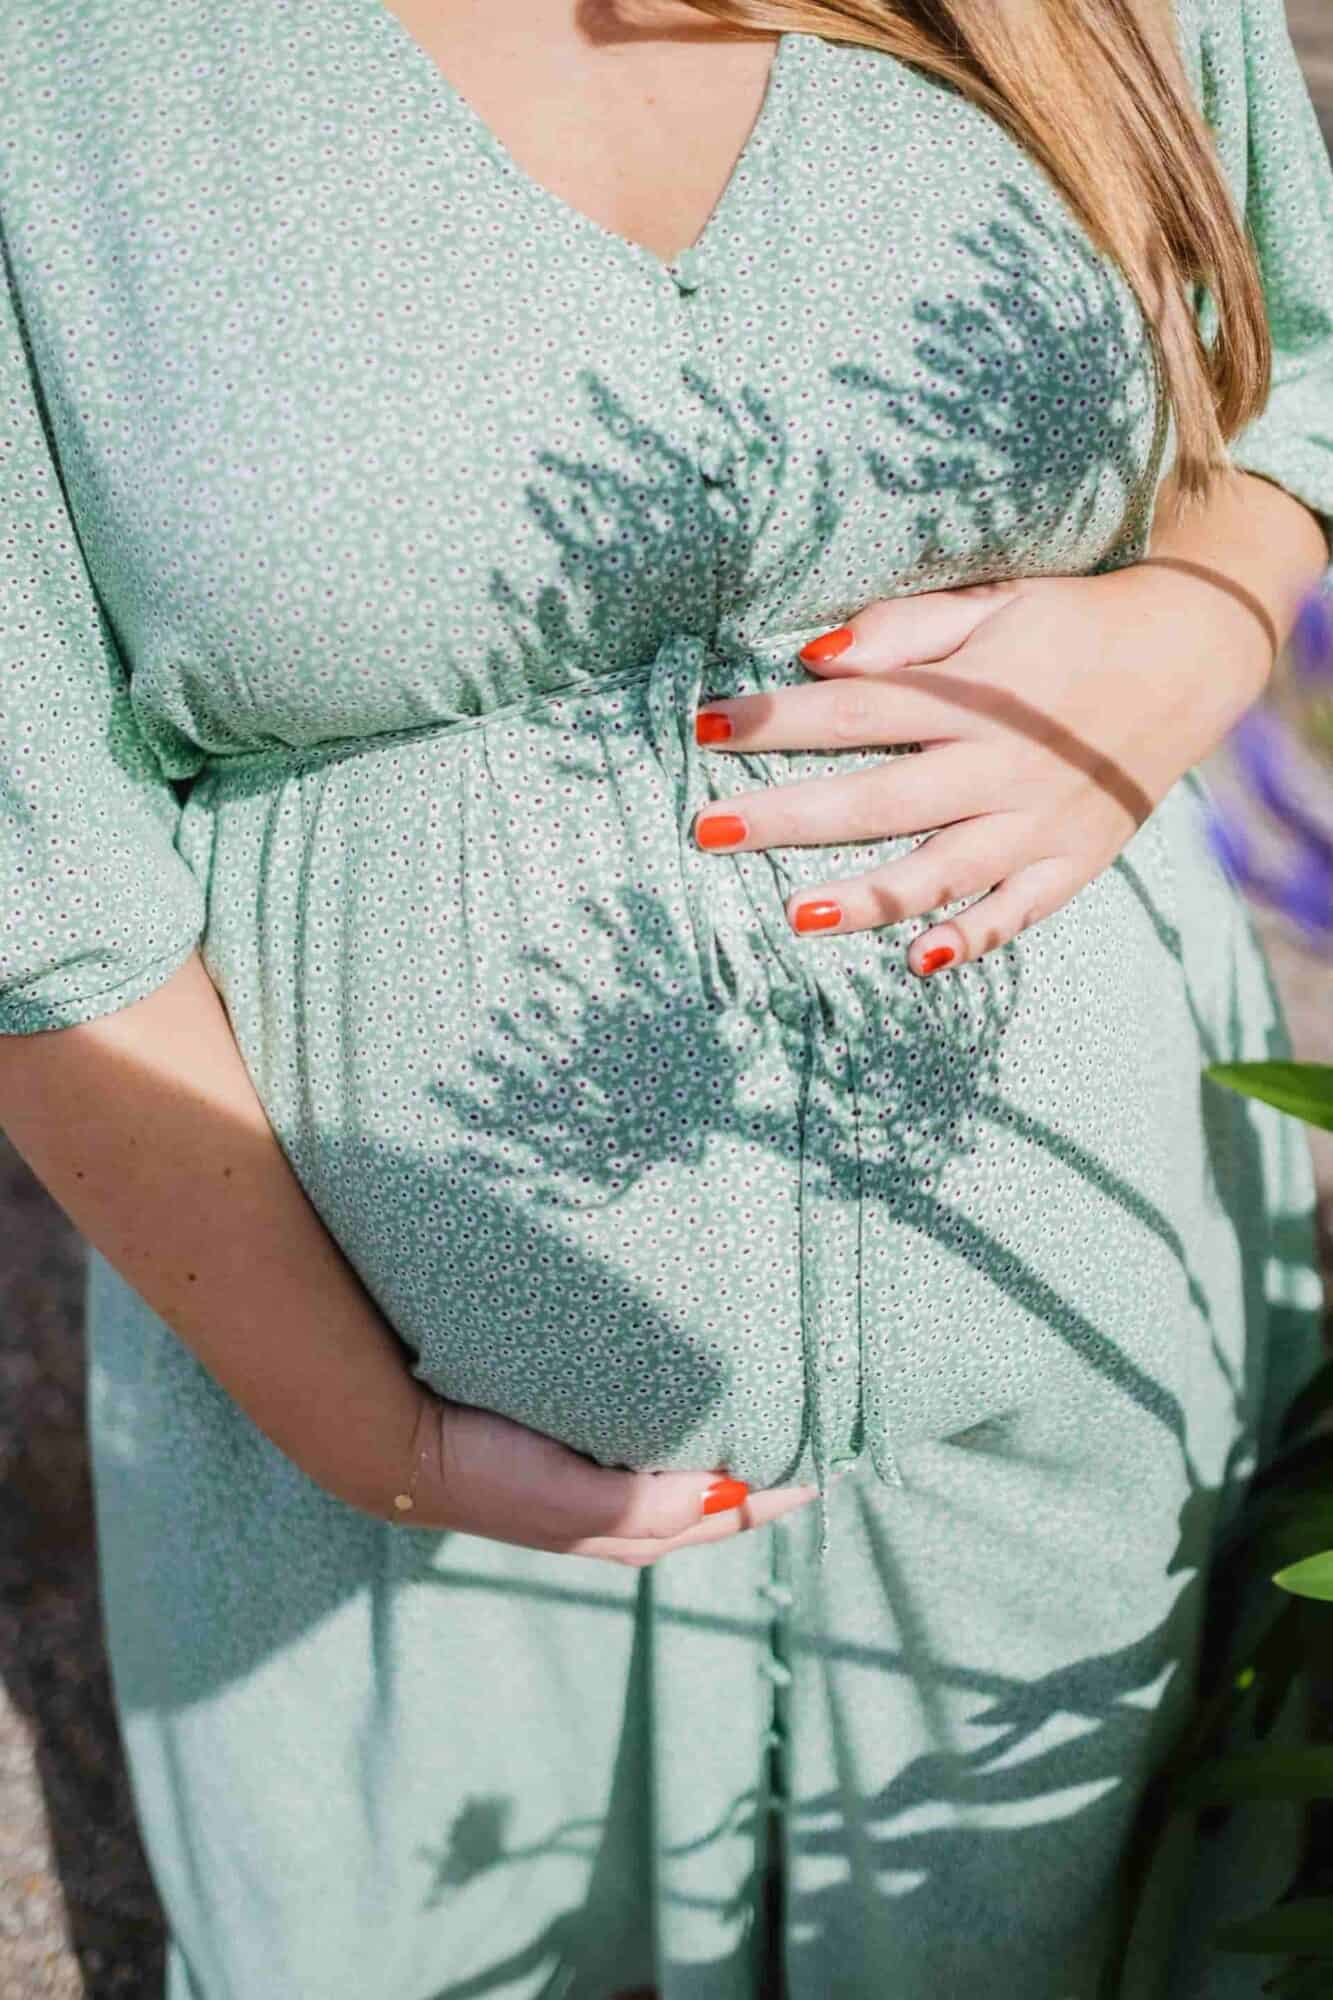 cellulite grossesse : femme enceinte avec les mains sur son ventre